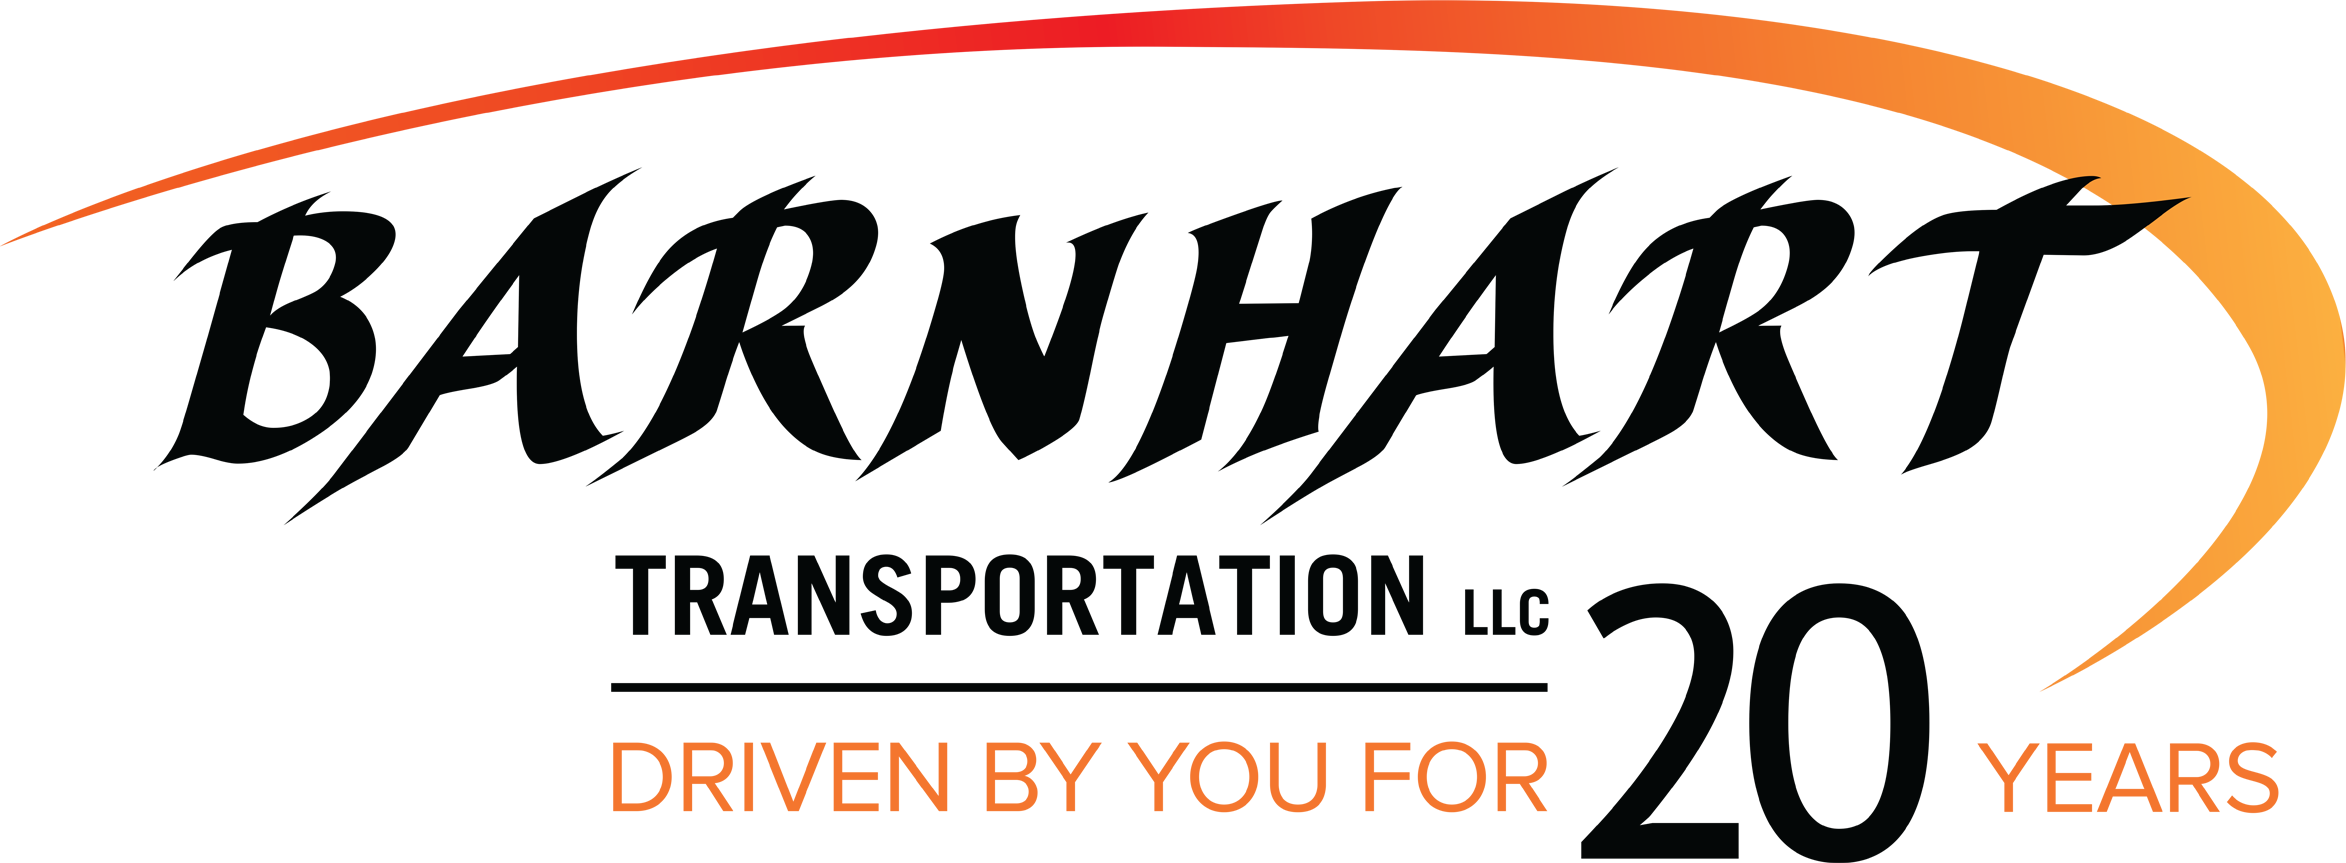 Barnhart Transportation - Logistics Services Provider